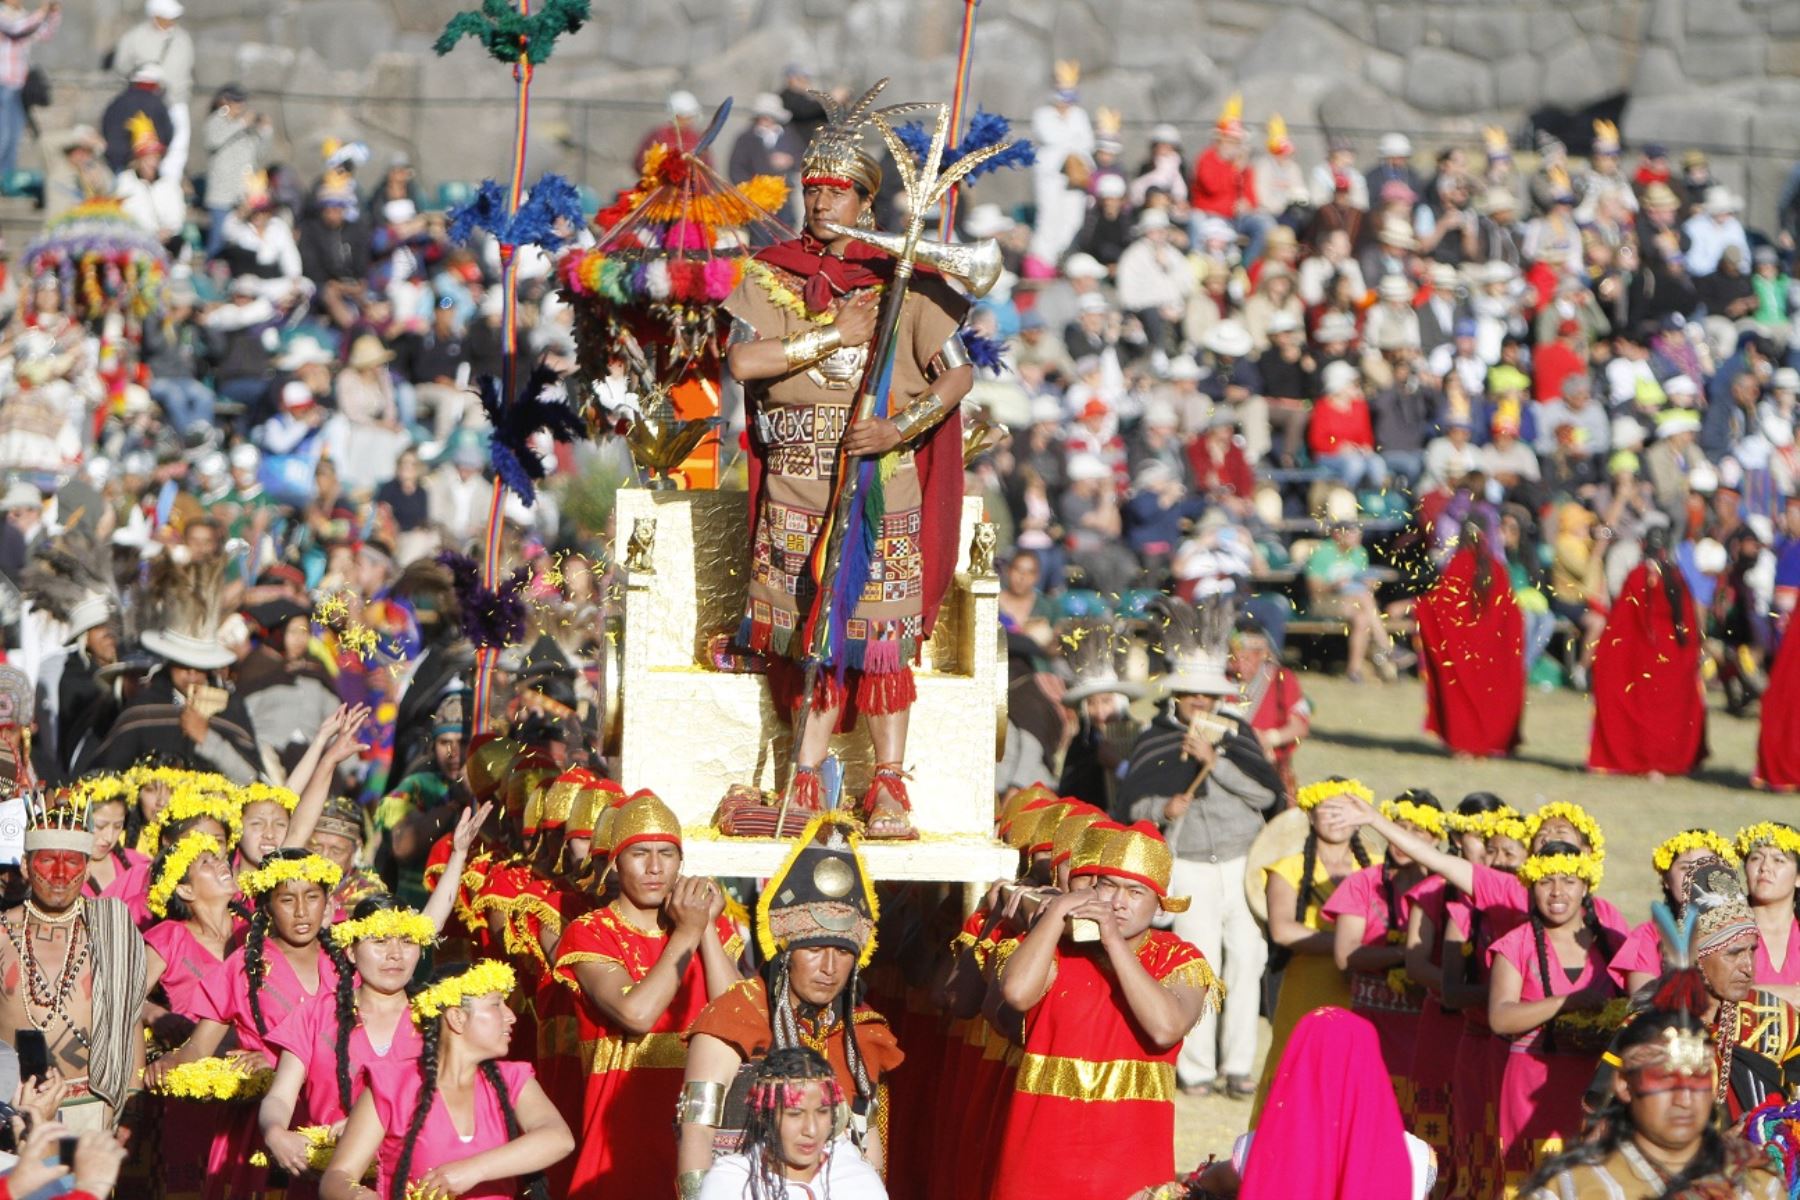 Las fiestas jubilares de Cusco, además del Inti Raymi, incluyen presentaciones culturales, pasacalles, exposiciones, homenajes y festivales folclóricos y gastronómicos, entre otros,ANDINA/Percy Hurtado Santillán